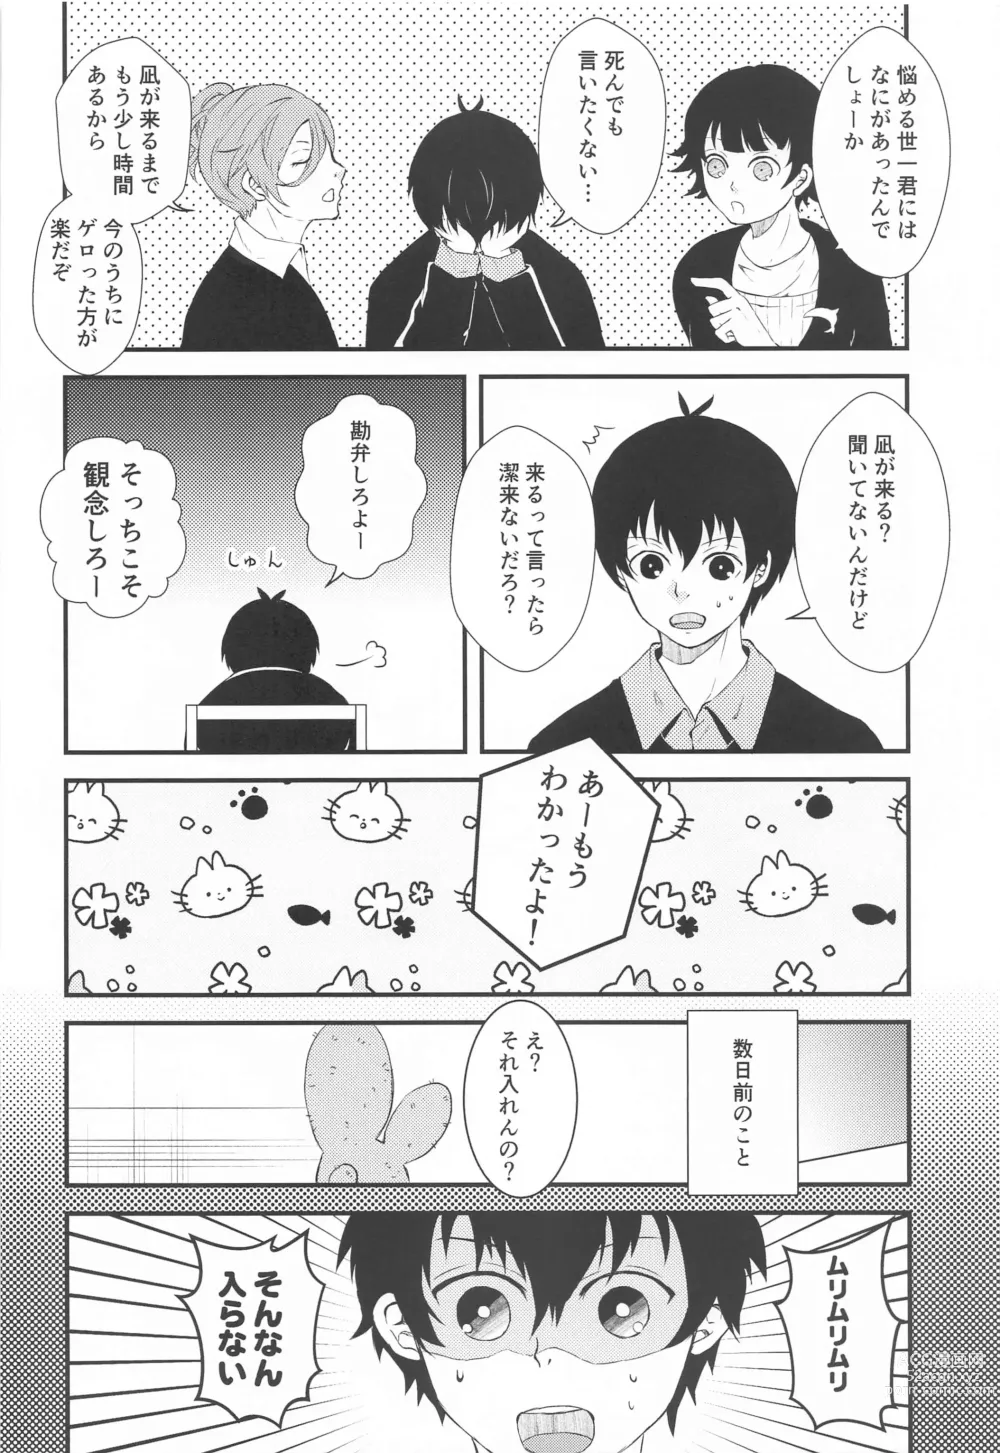 Page 4 of doujinshi Tensai to Yuuutsu